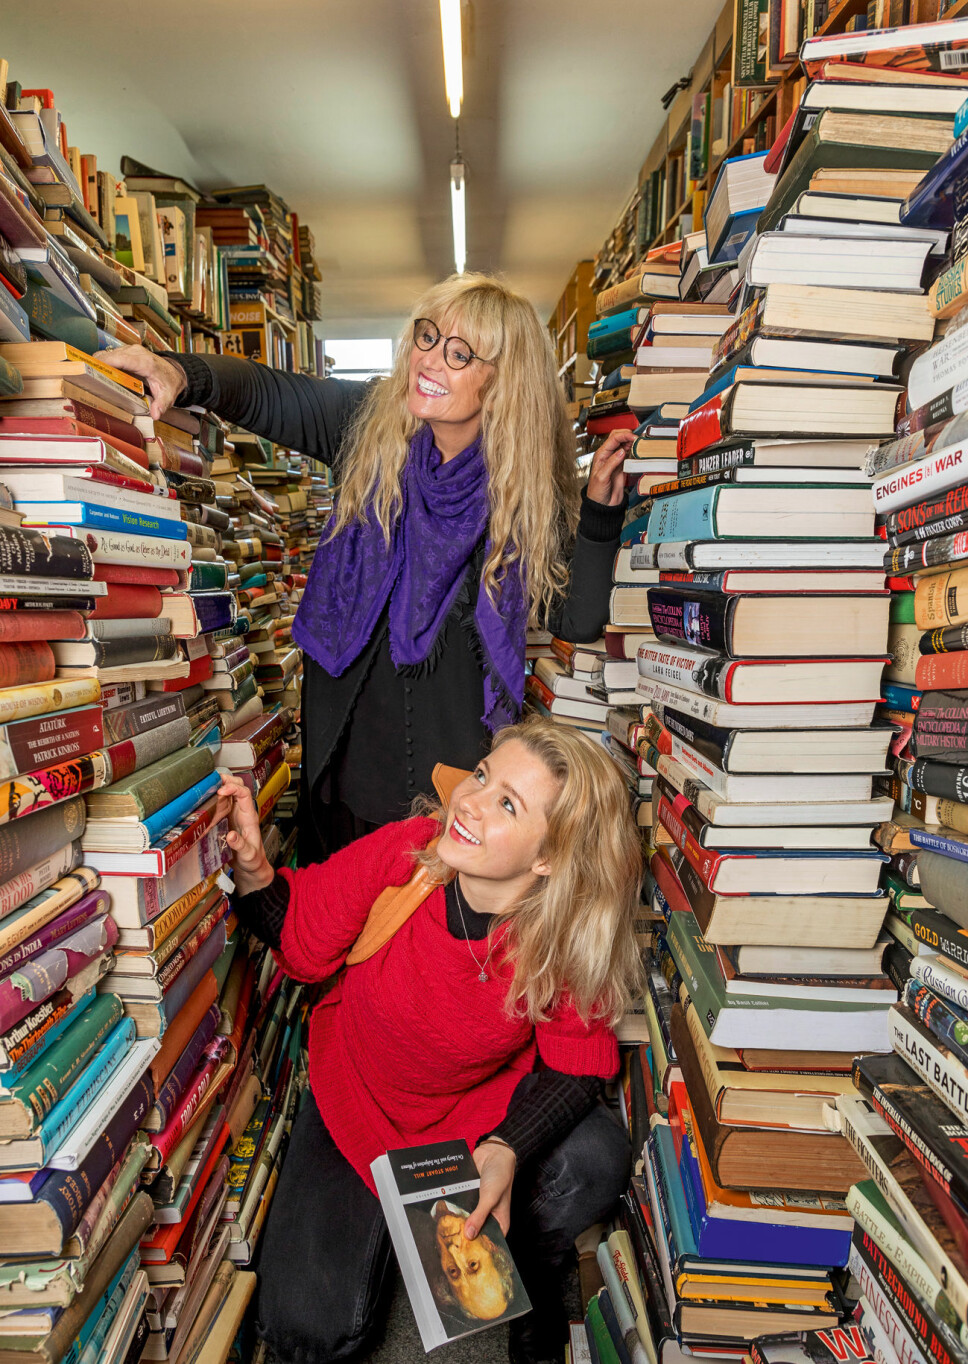 BELEST DUO: Både Hanne og Amalie elsker å lese bøker. Her er de på handel i en helt spesiell bokhandel i Glasgow.